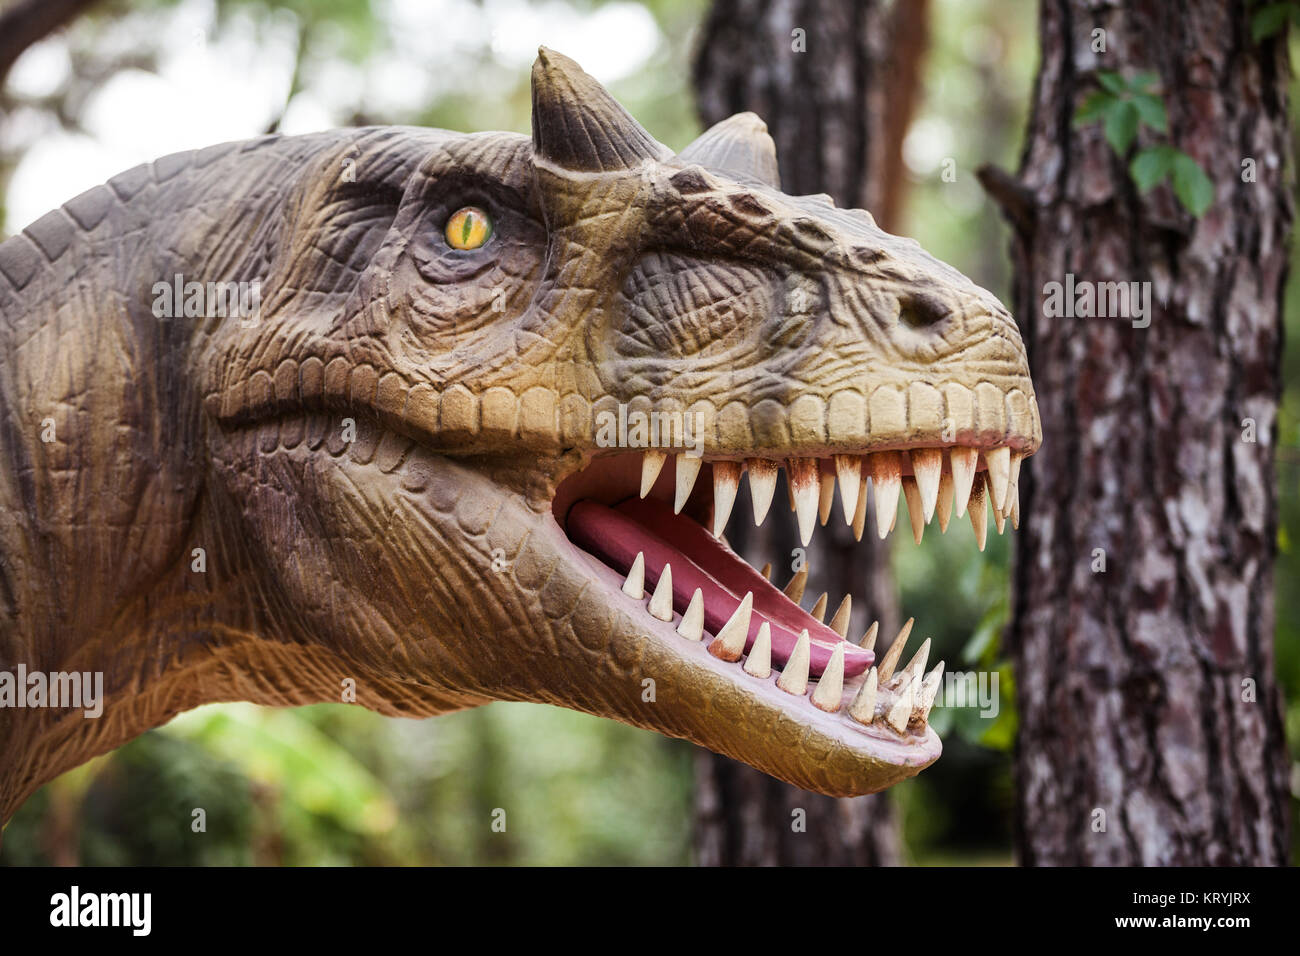 Tempi preistorici dinosauro a piedi la foresta che mostra la sua bocca toothy Foto Stock